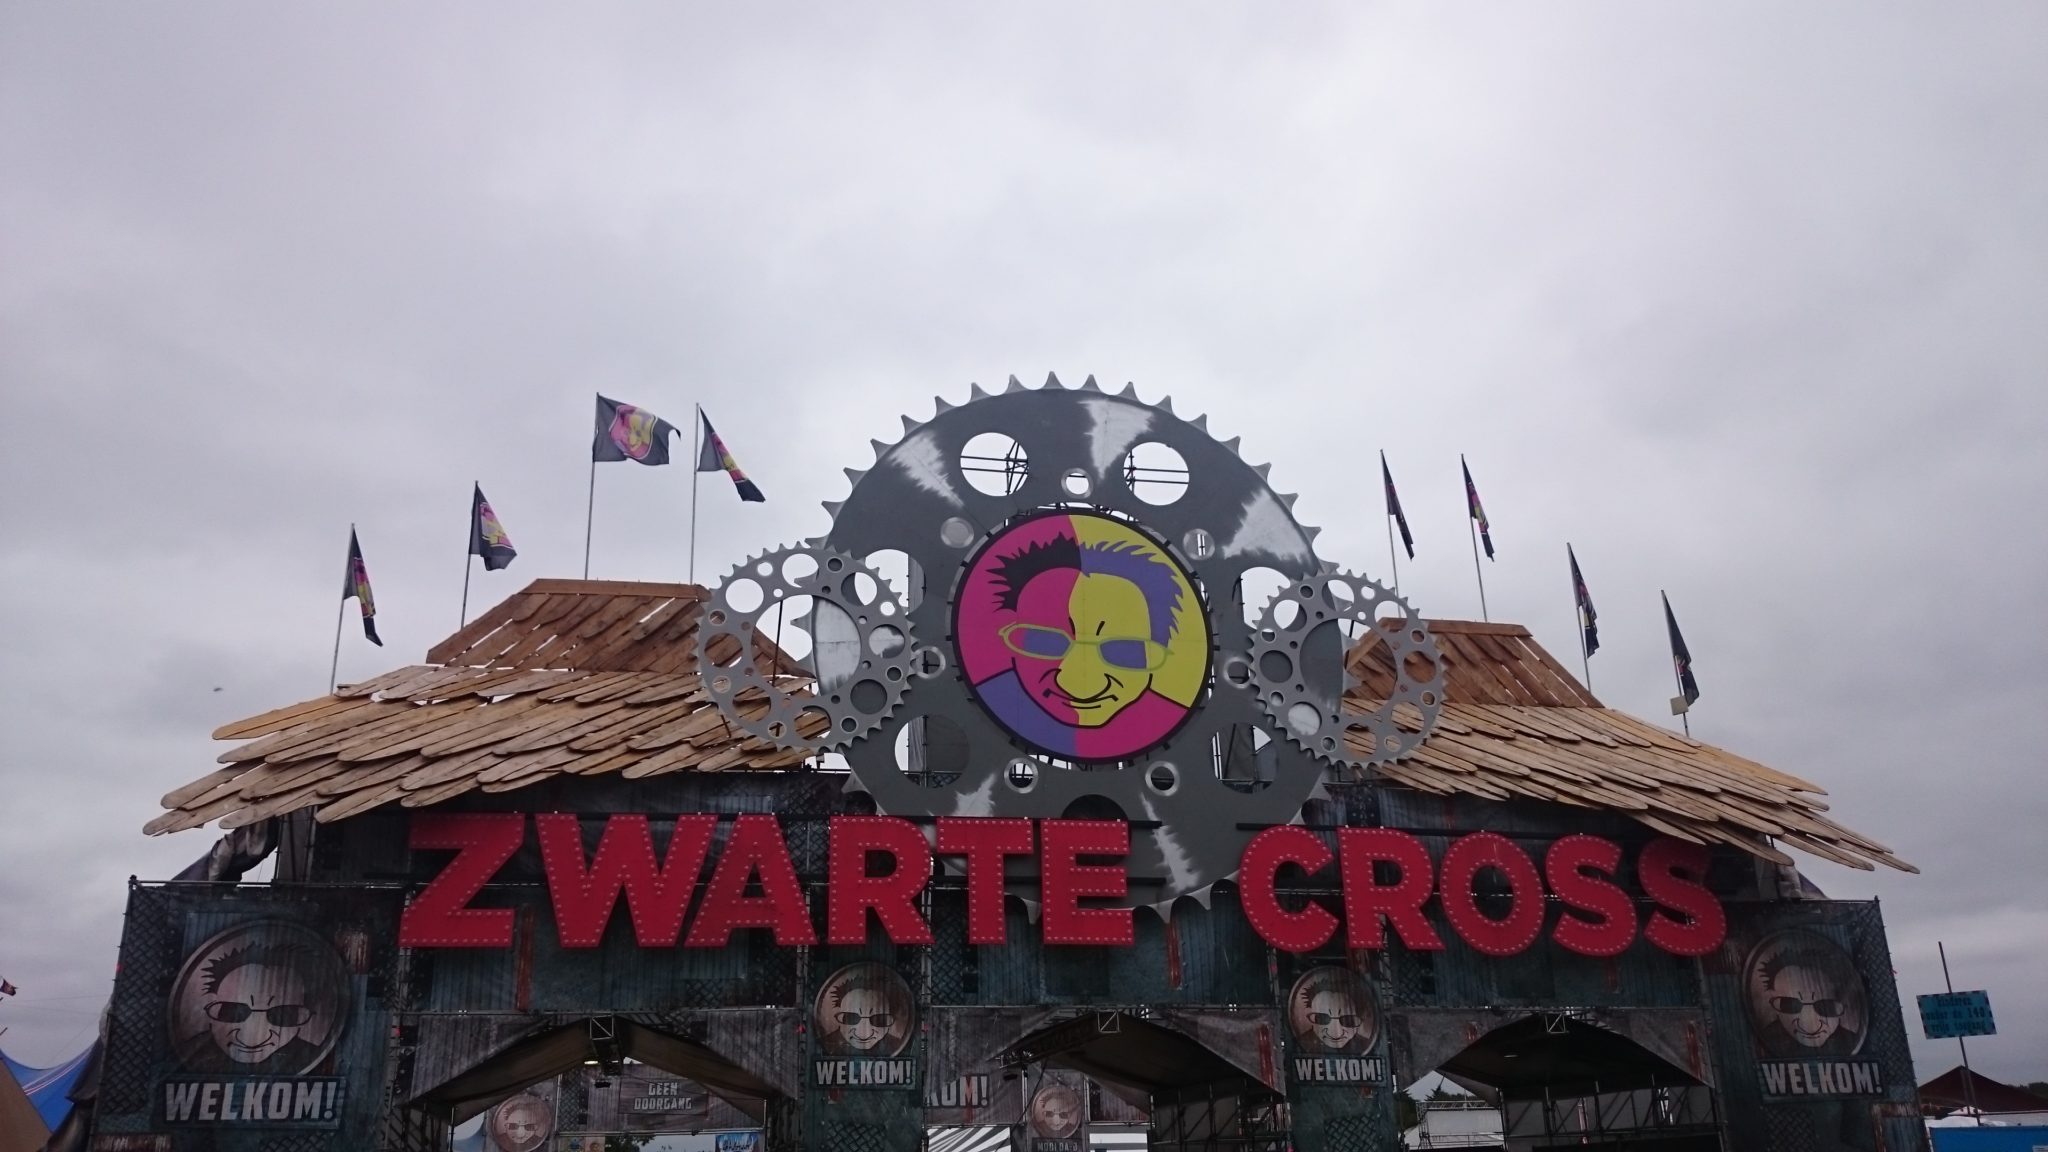 10 nieuwigheden op Zwarte Cross 2019 | Festileaks.com